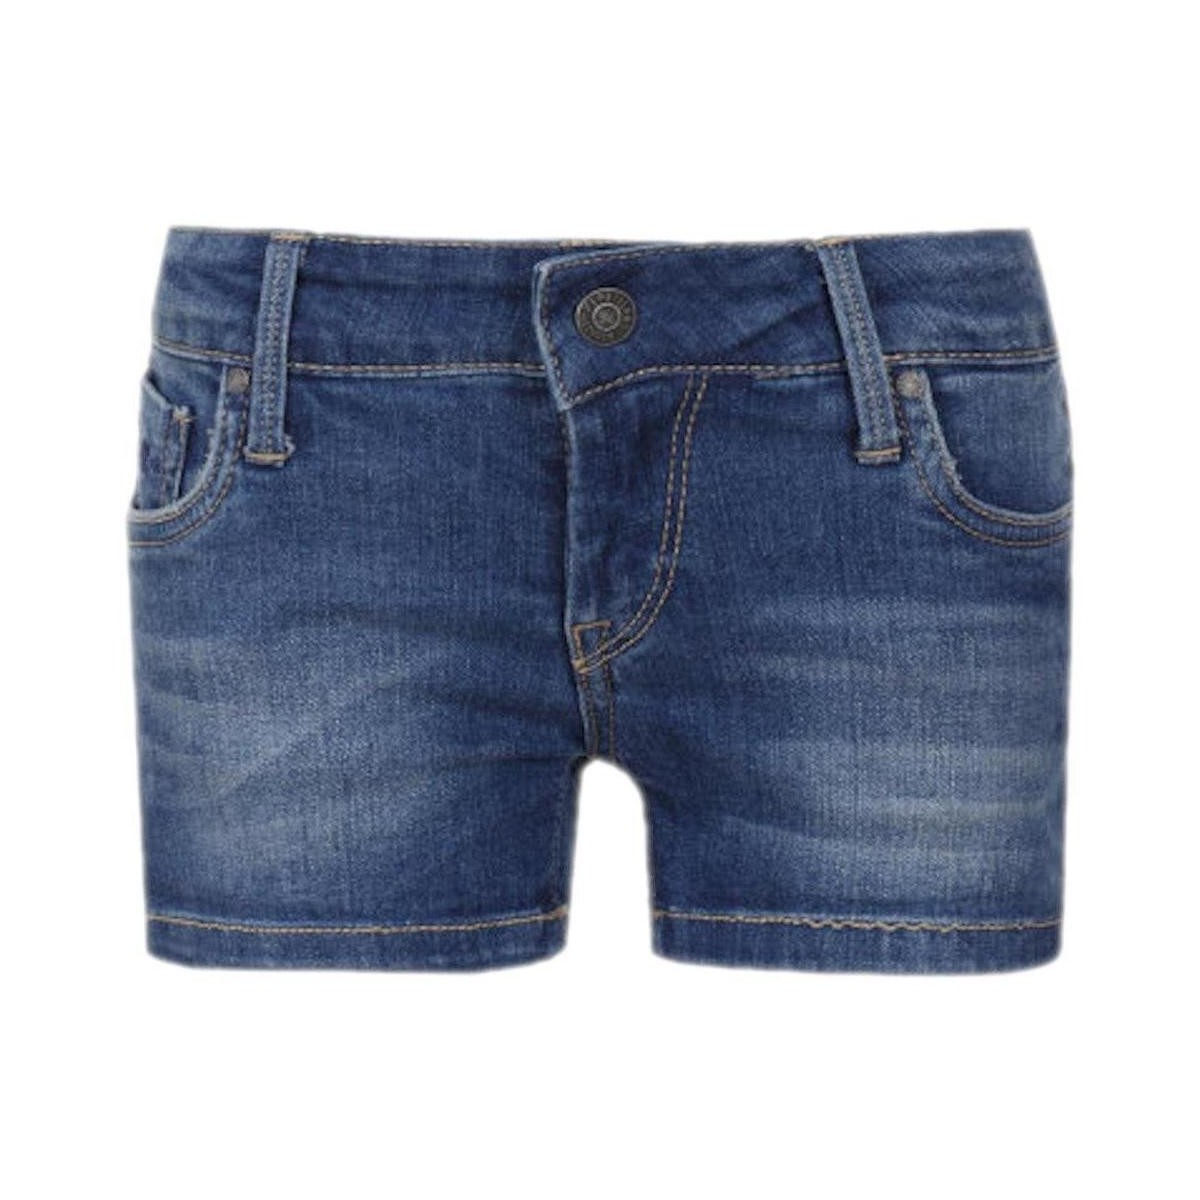 Odjeća Djevojčica Bermude i kratke hlače Pepe jeans  Plava